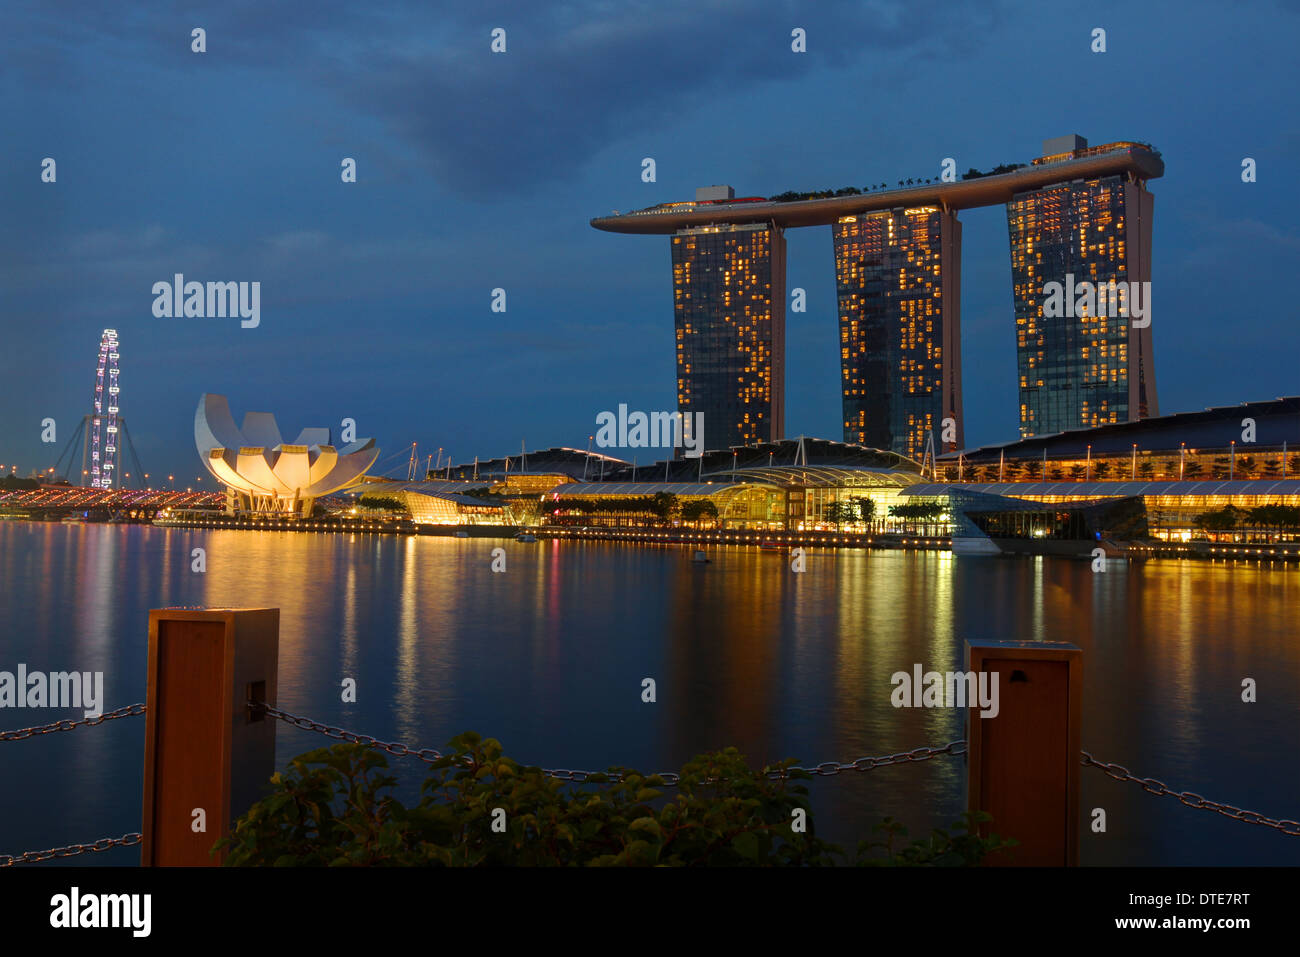 Il Marina Bay Sands Hotel presso il Marina District, Singapore. Notte. Foto Stock